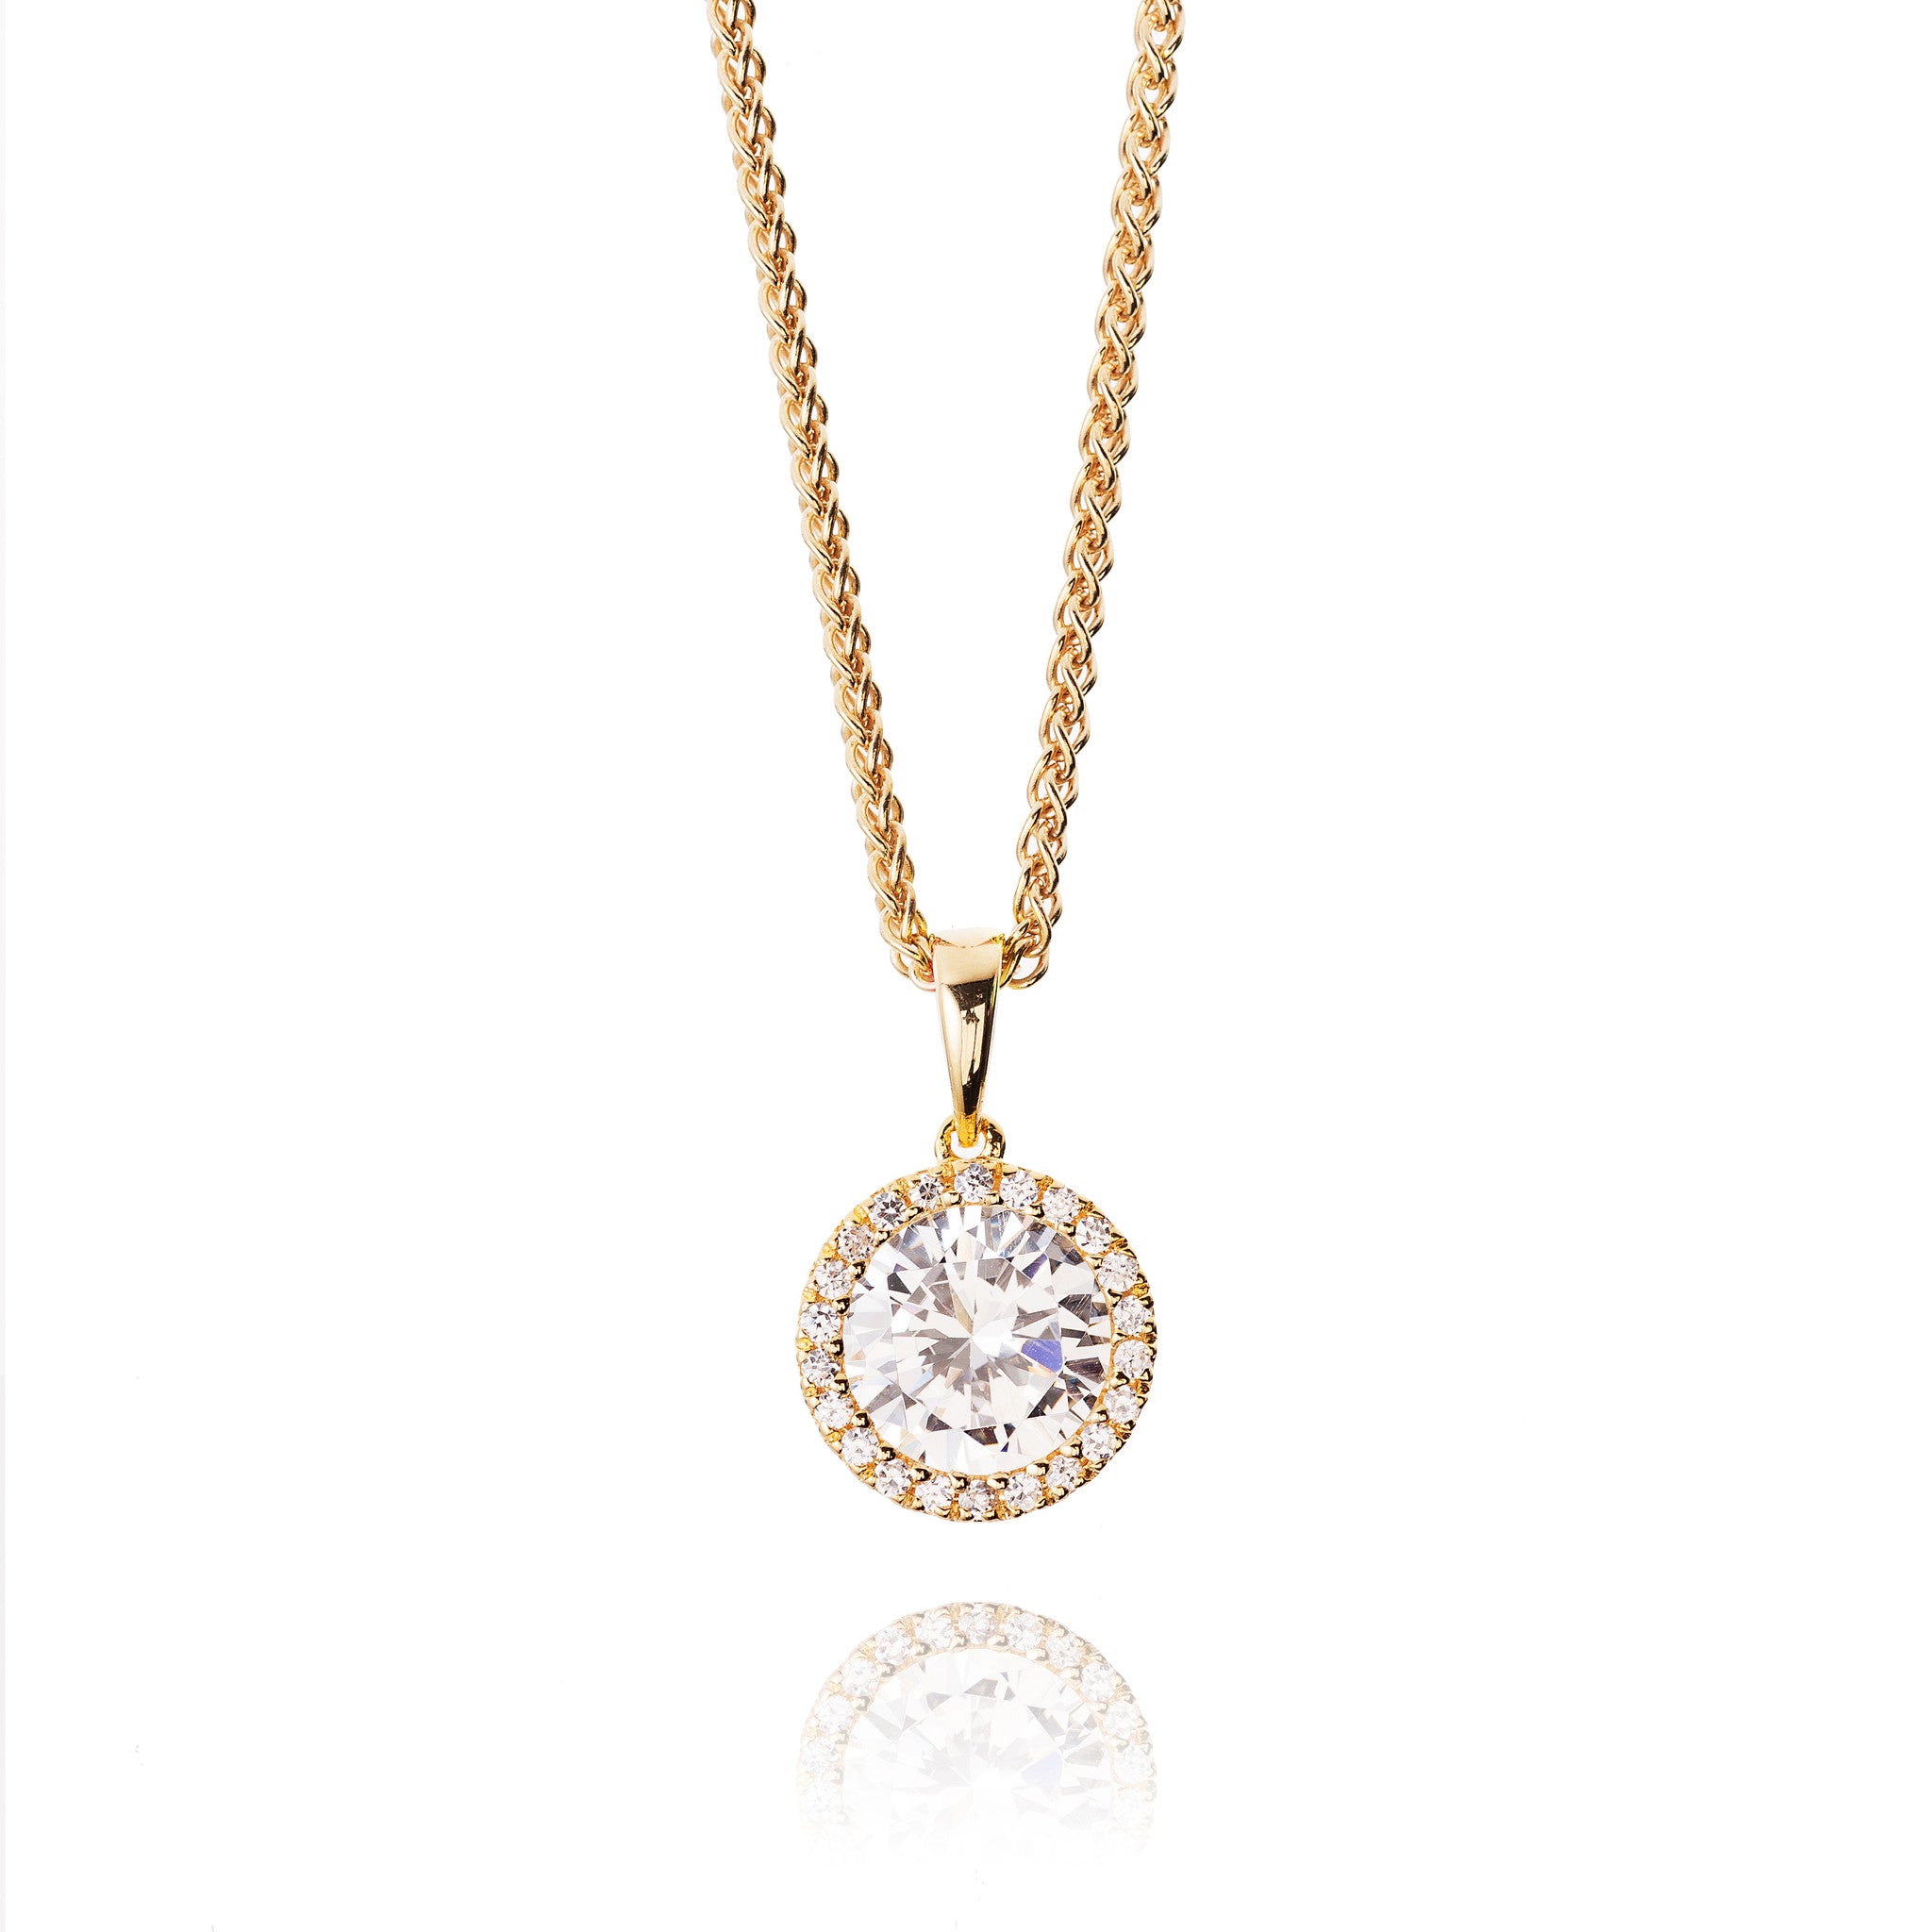 Designer BBJ Sterling Silver Large Blue Crystal Pendant Necklace | eBay